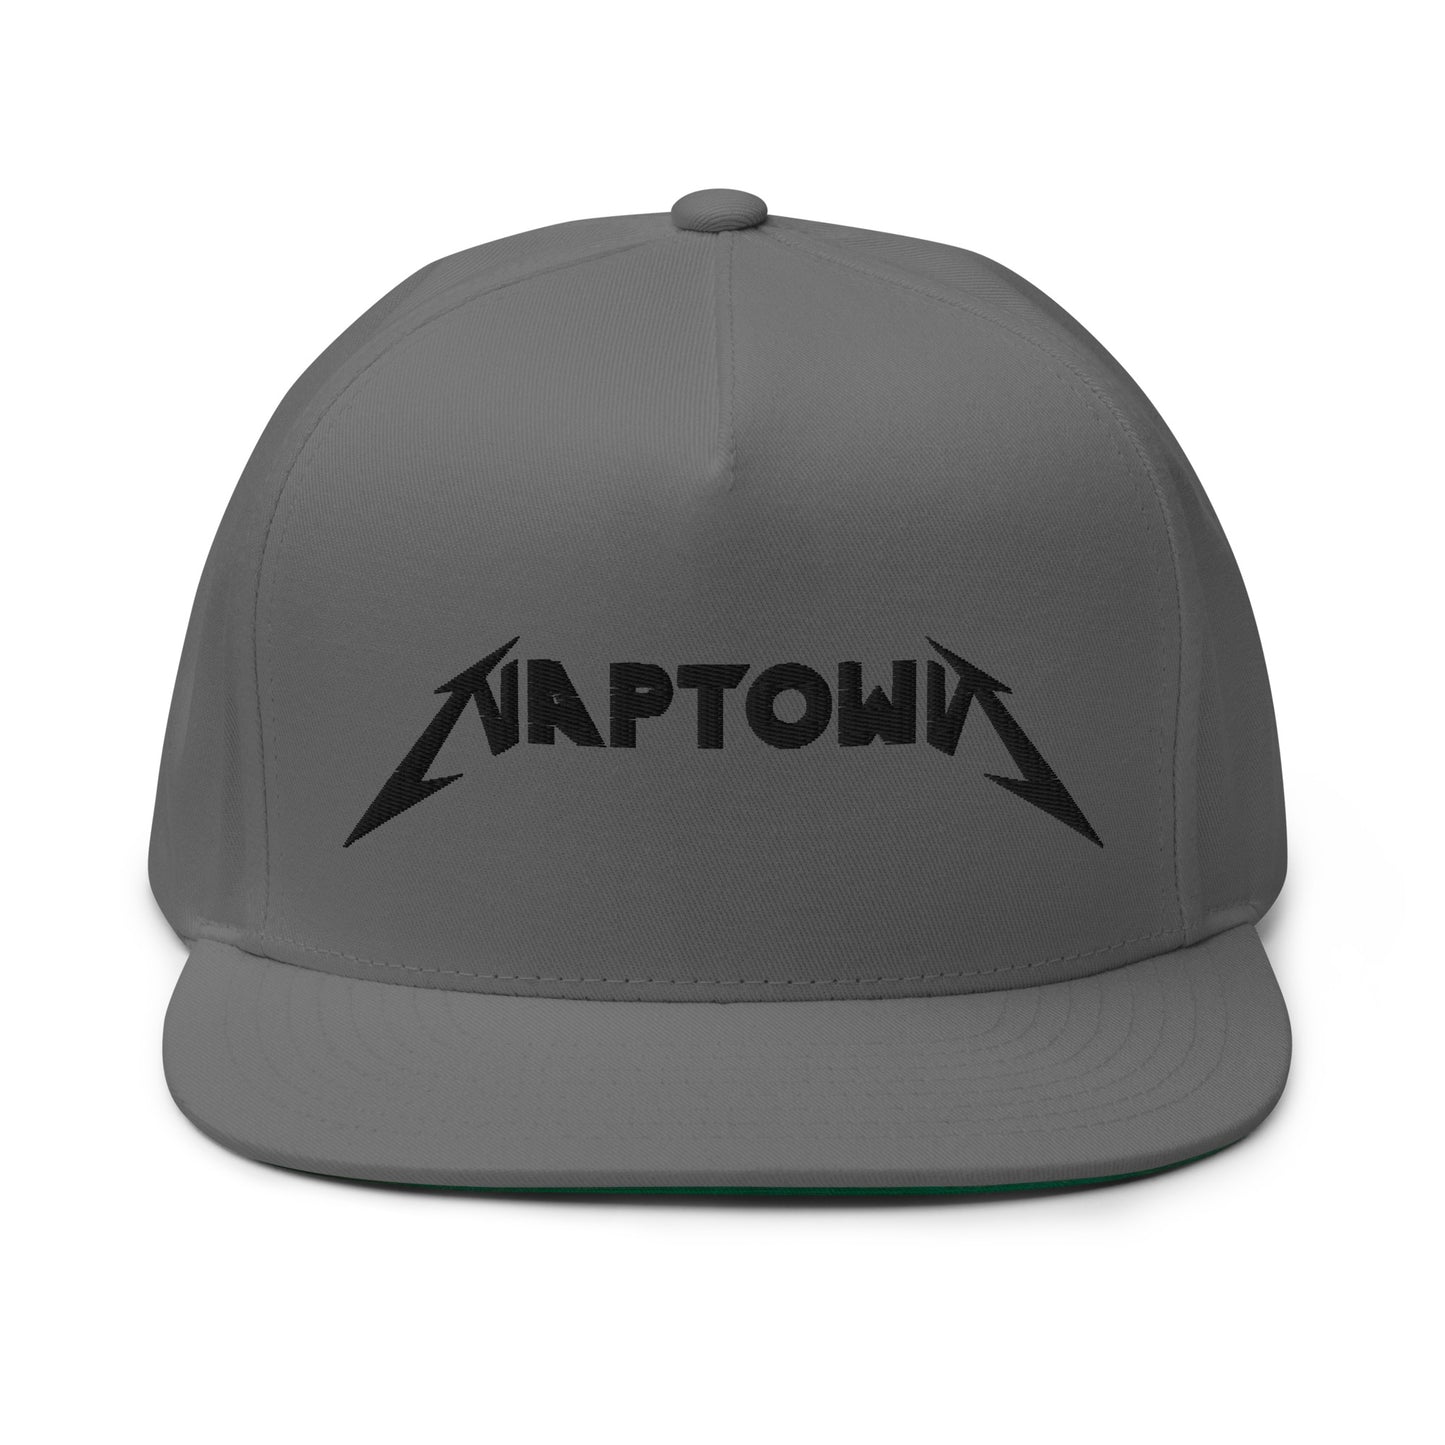 NAPTOWN - Flat Bill Cap